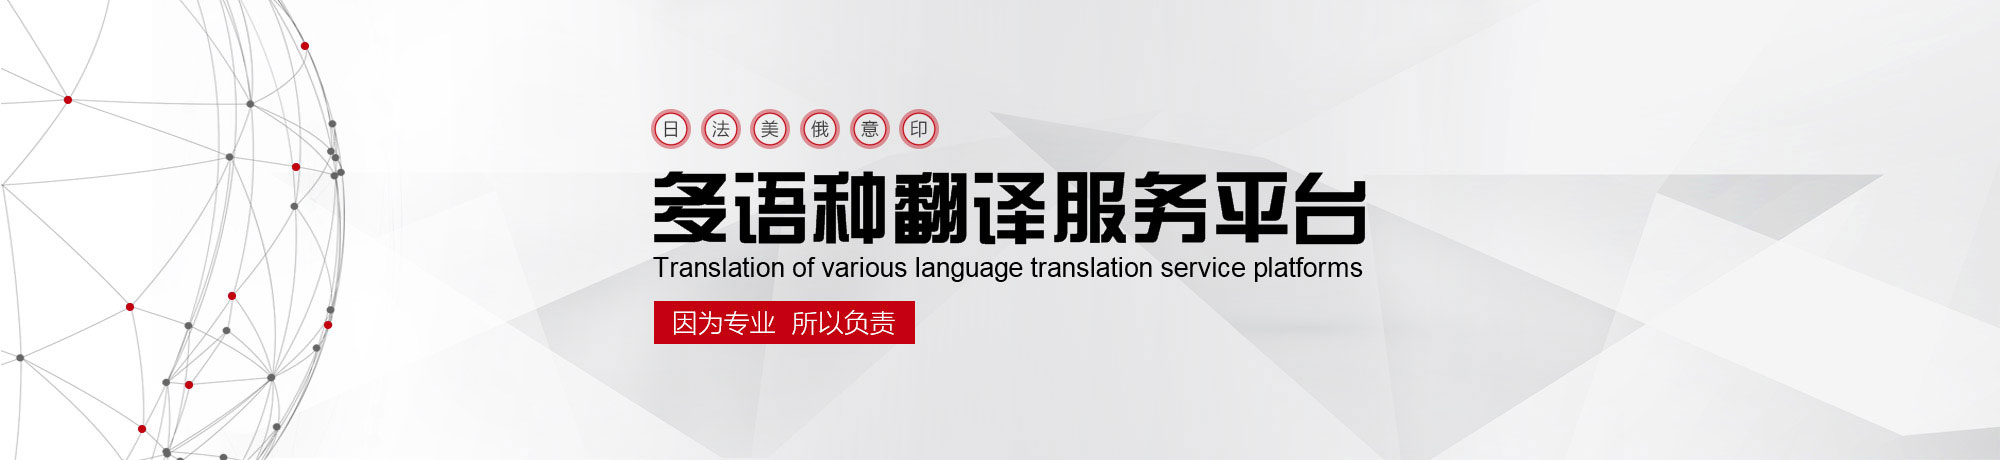 北京翻譯公司,專業翻譯公司,權威翻譯公司,翻譯機構,正規翻譯公司